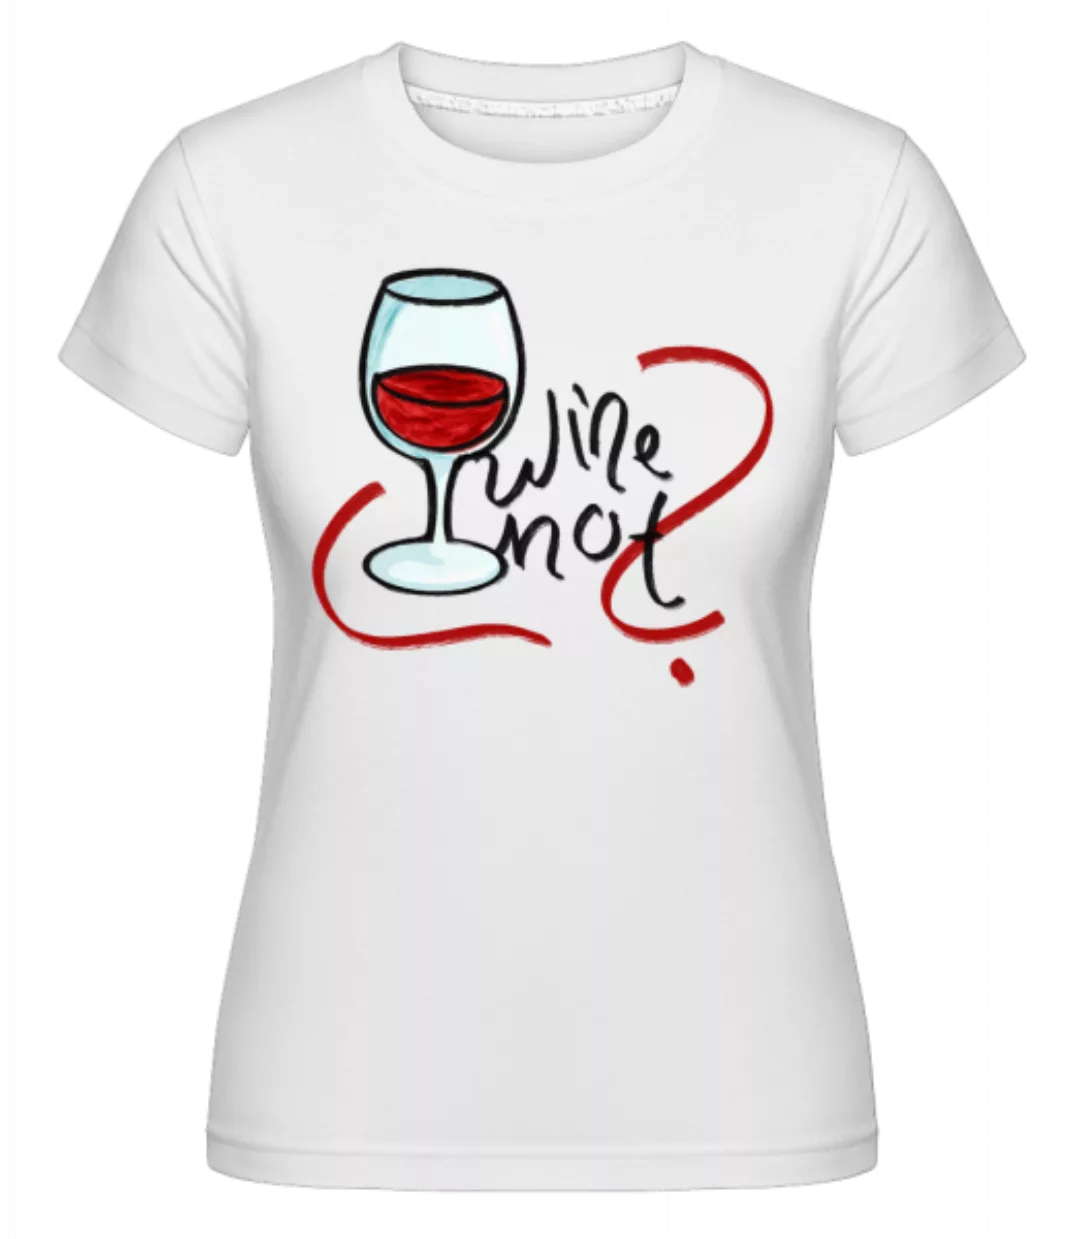 Wine Not · Shirtinator Frauen T-Shirt günstig online kaufen